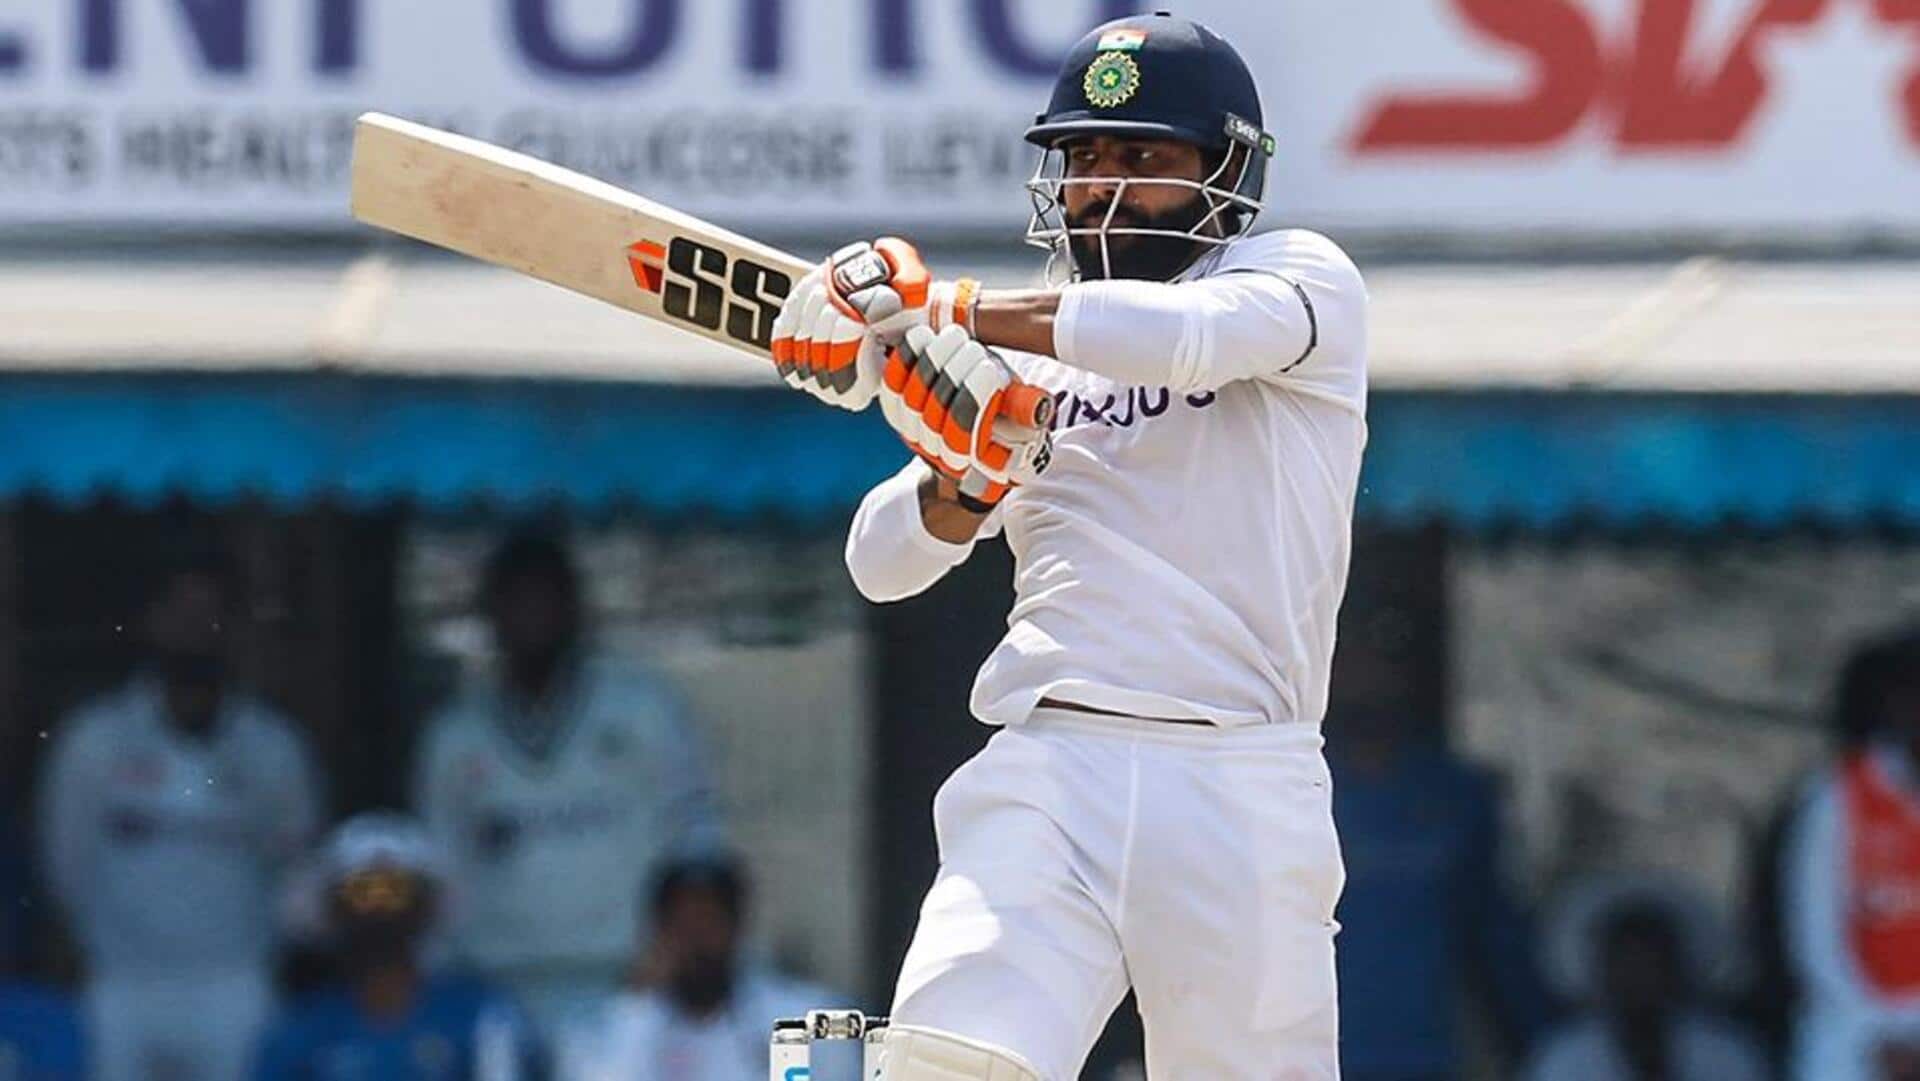 भारत बनाम इंग्लैंड: रविंद्र जडेजा टेस्ट क्रिकेट में पहली बार हुए रन आउट, जानिए उनके आंकड़े